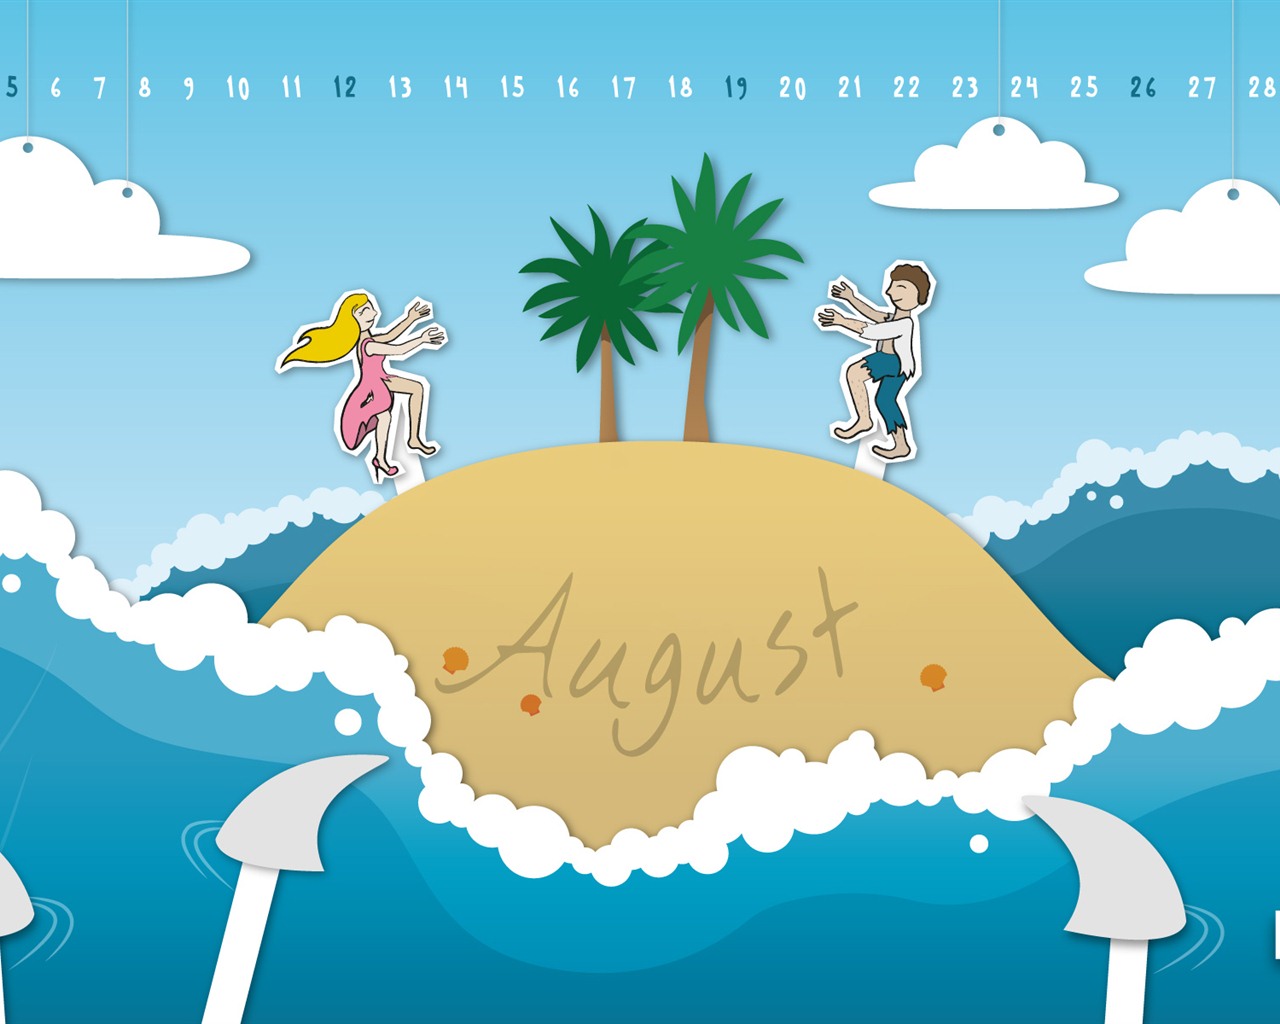 August 2012 Calendar wallpapers (2) #8 - 1280x1024